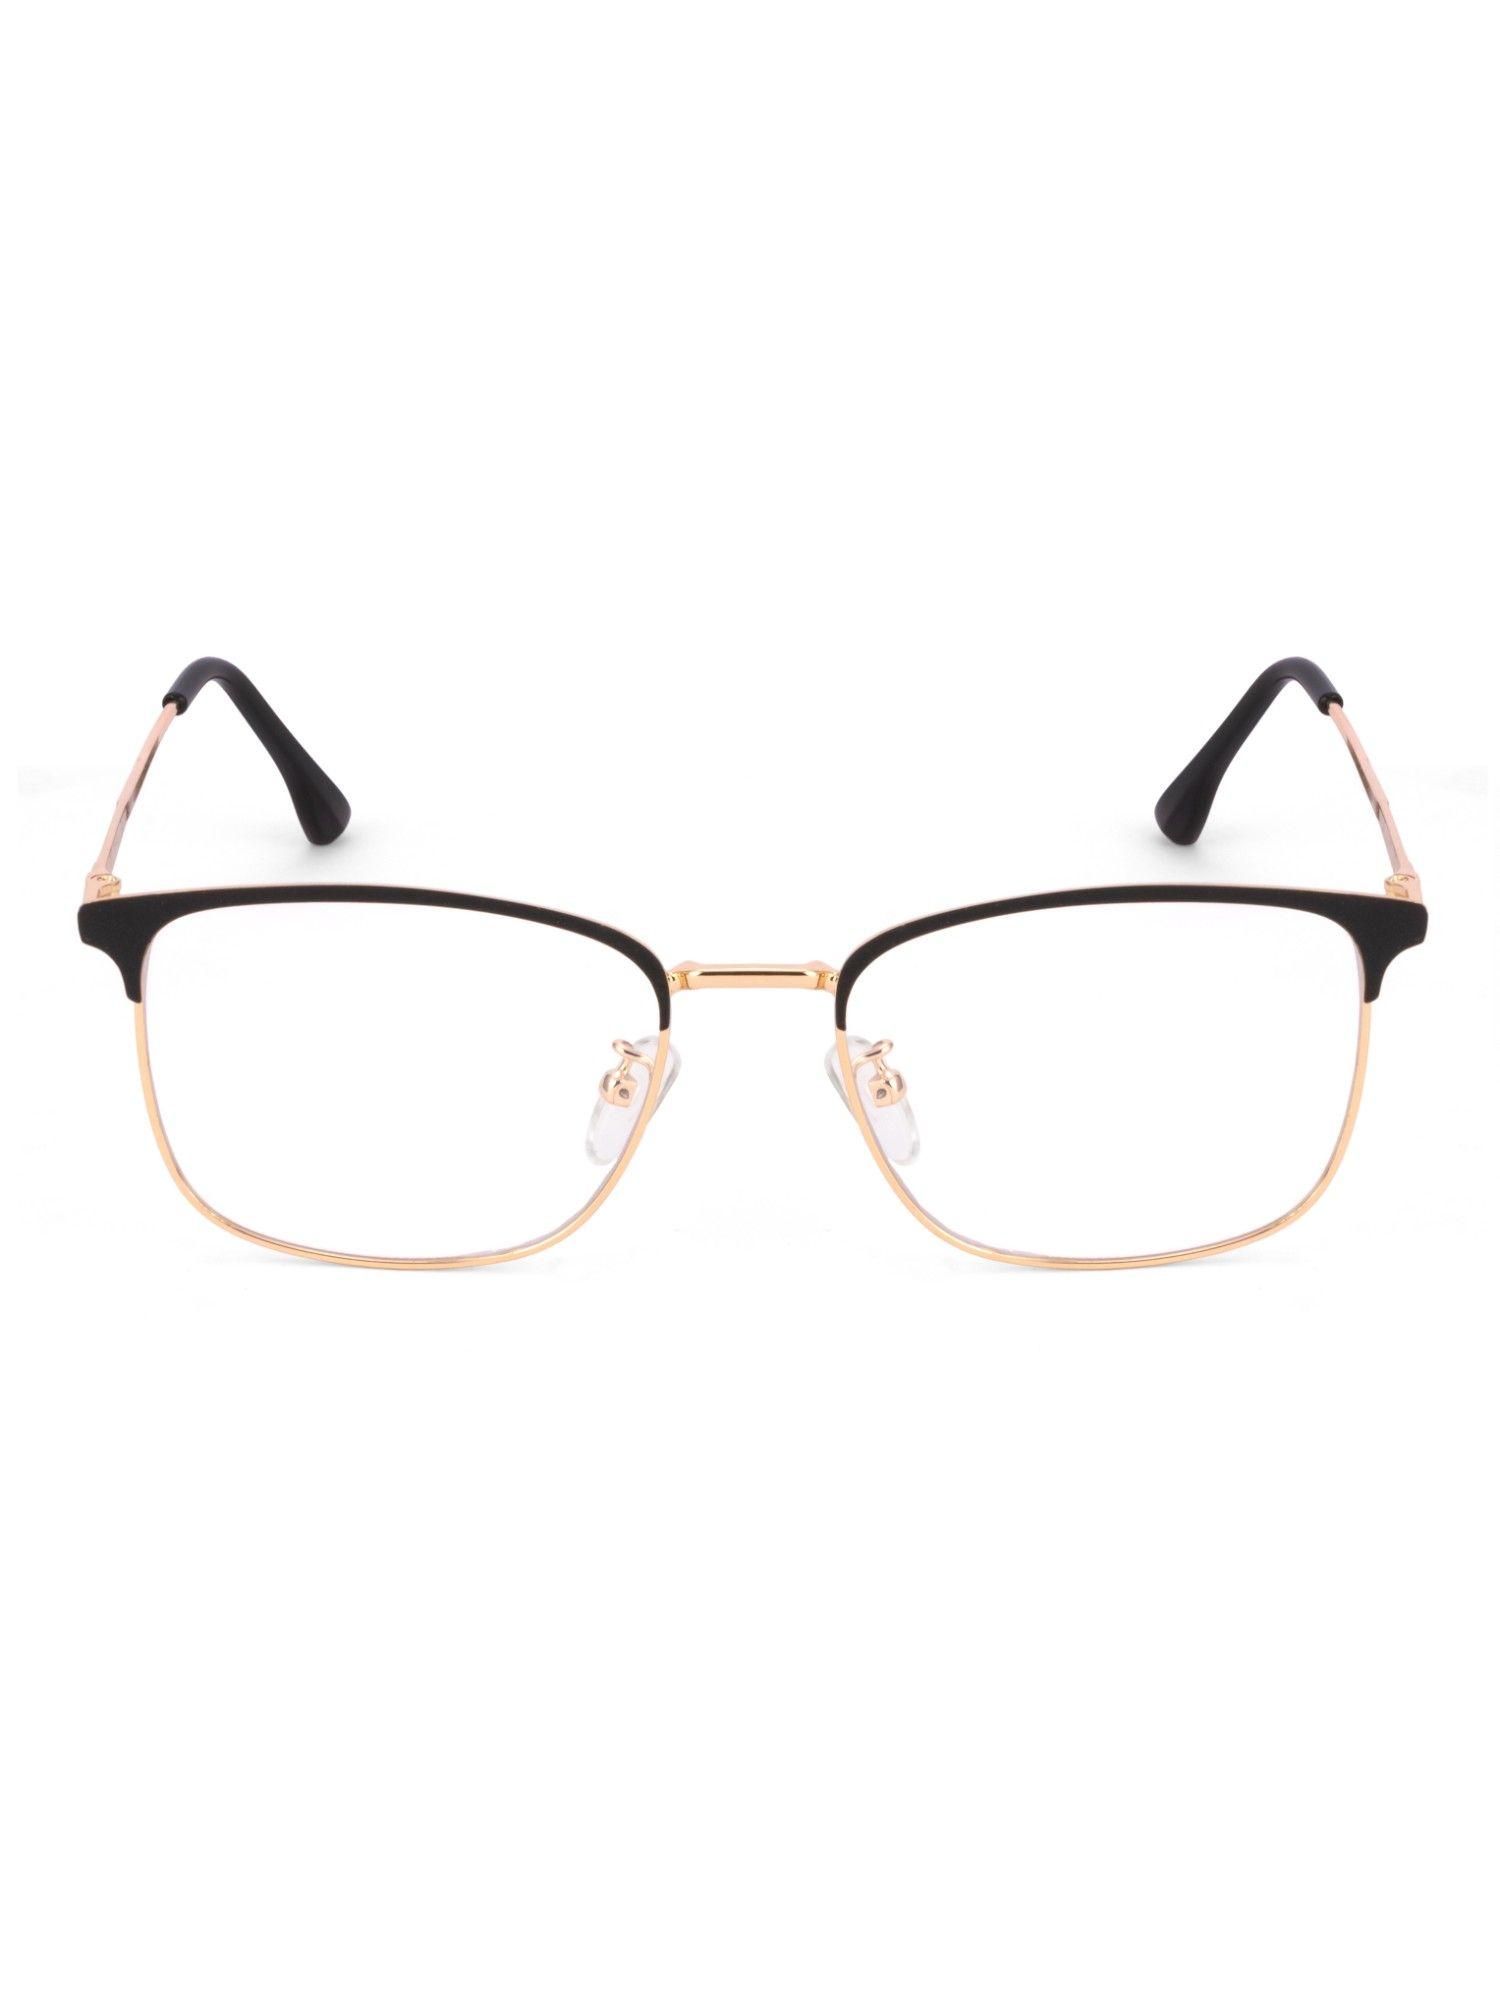 square black gold eye glasses for men women sf0087-c4